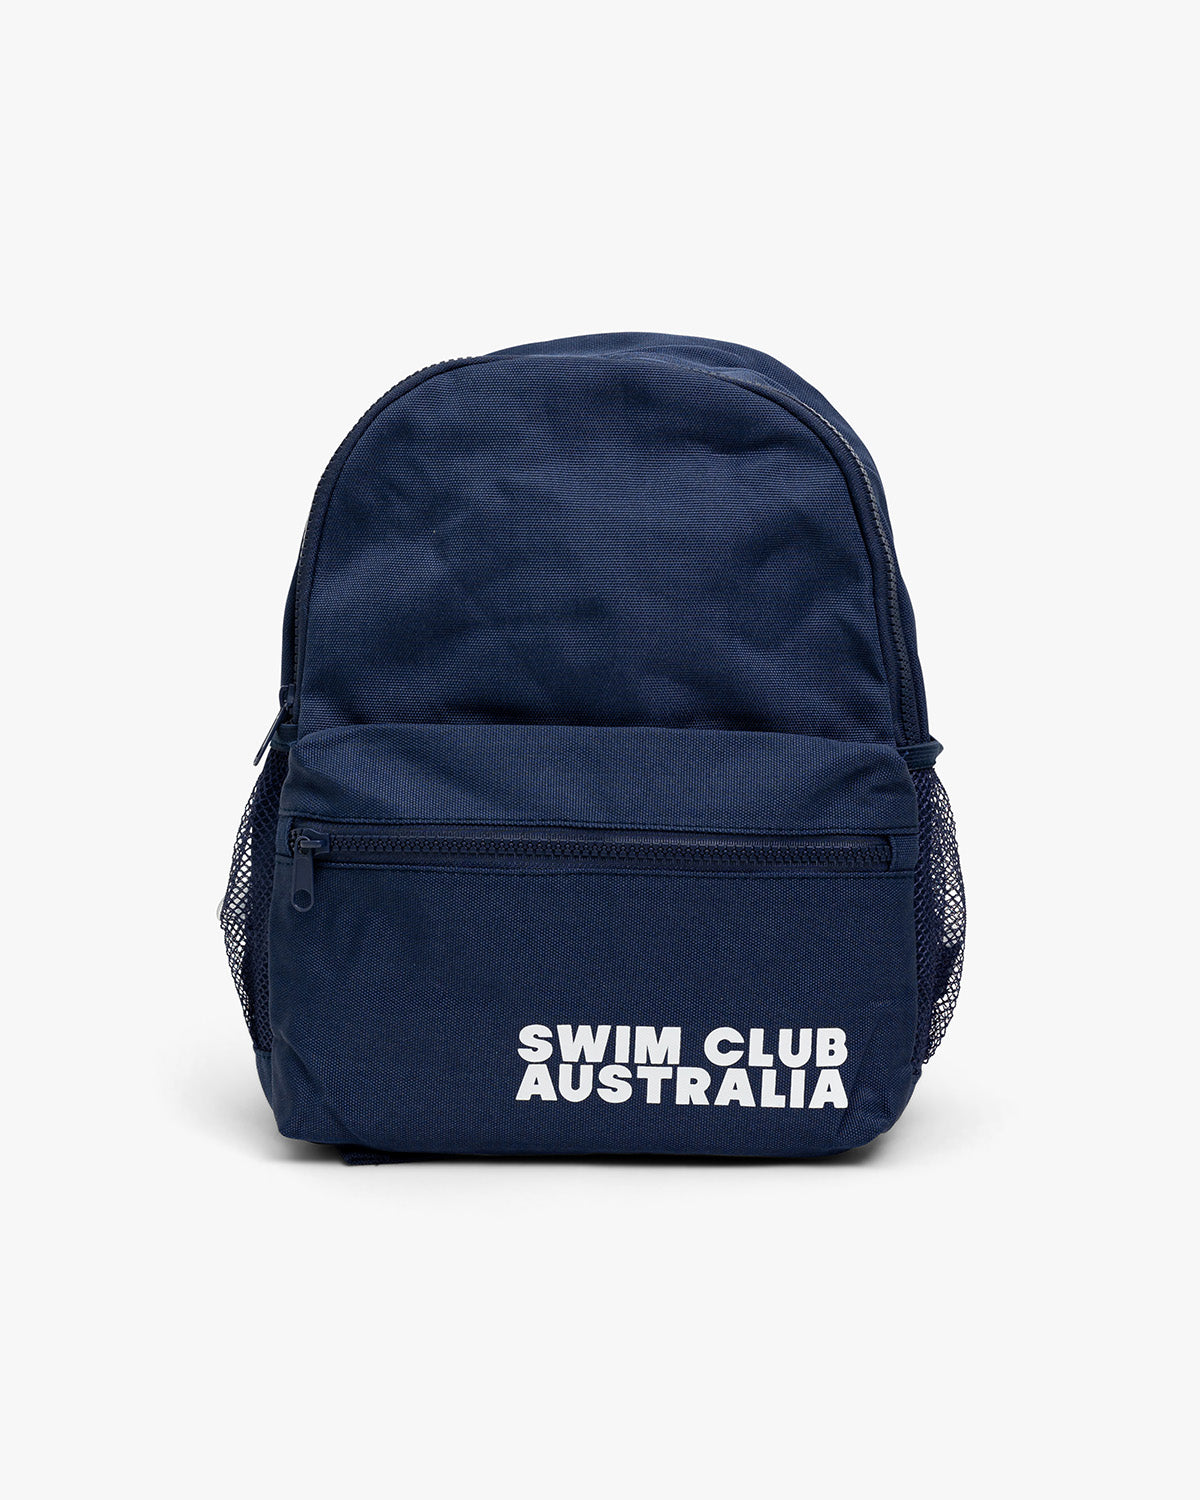 Swim Backpack - Aqua